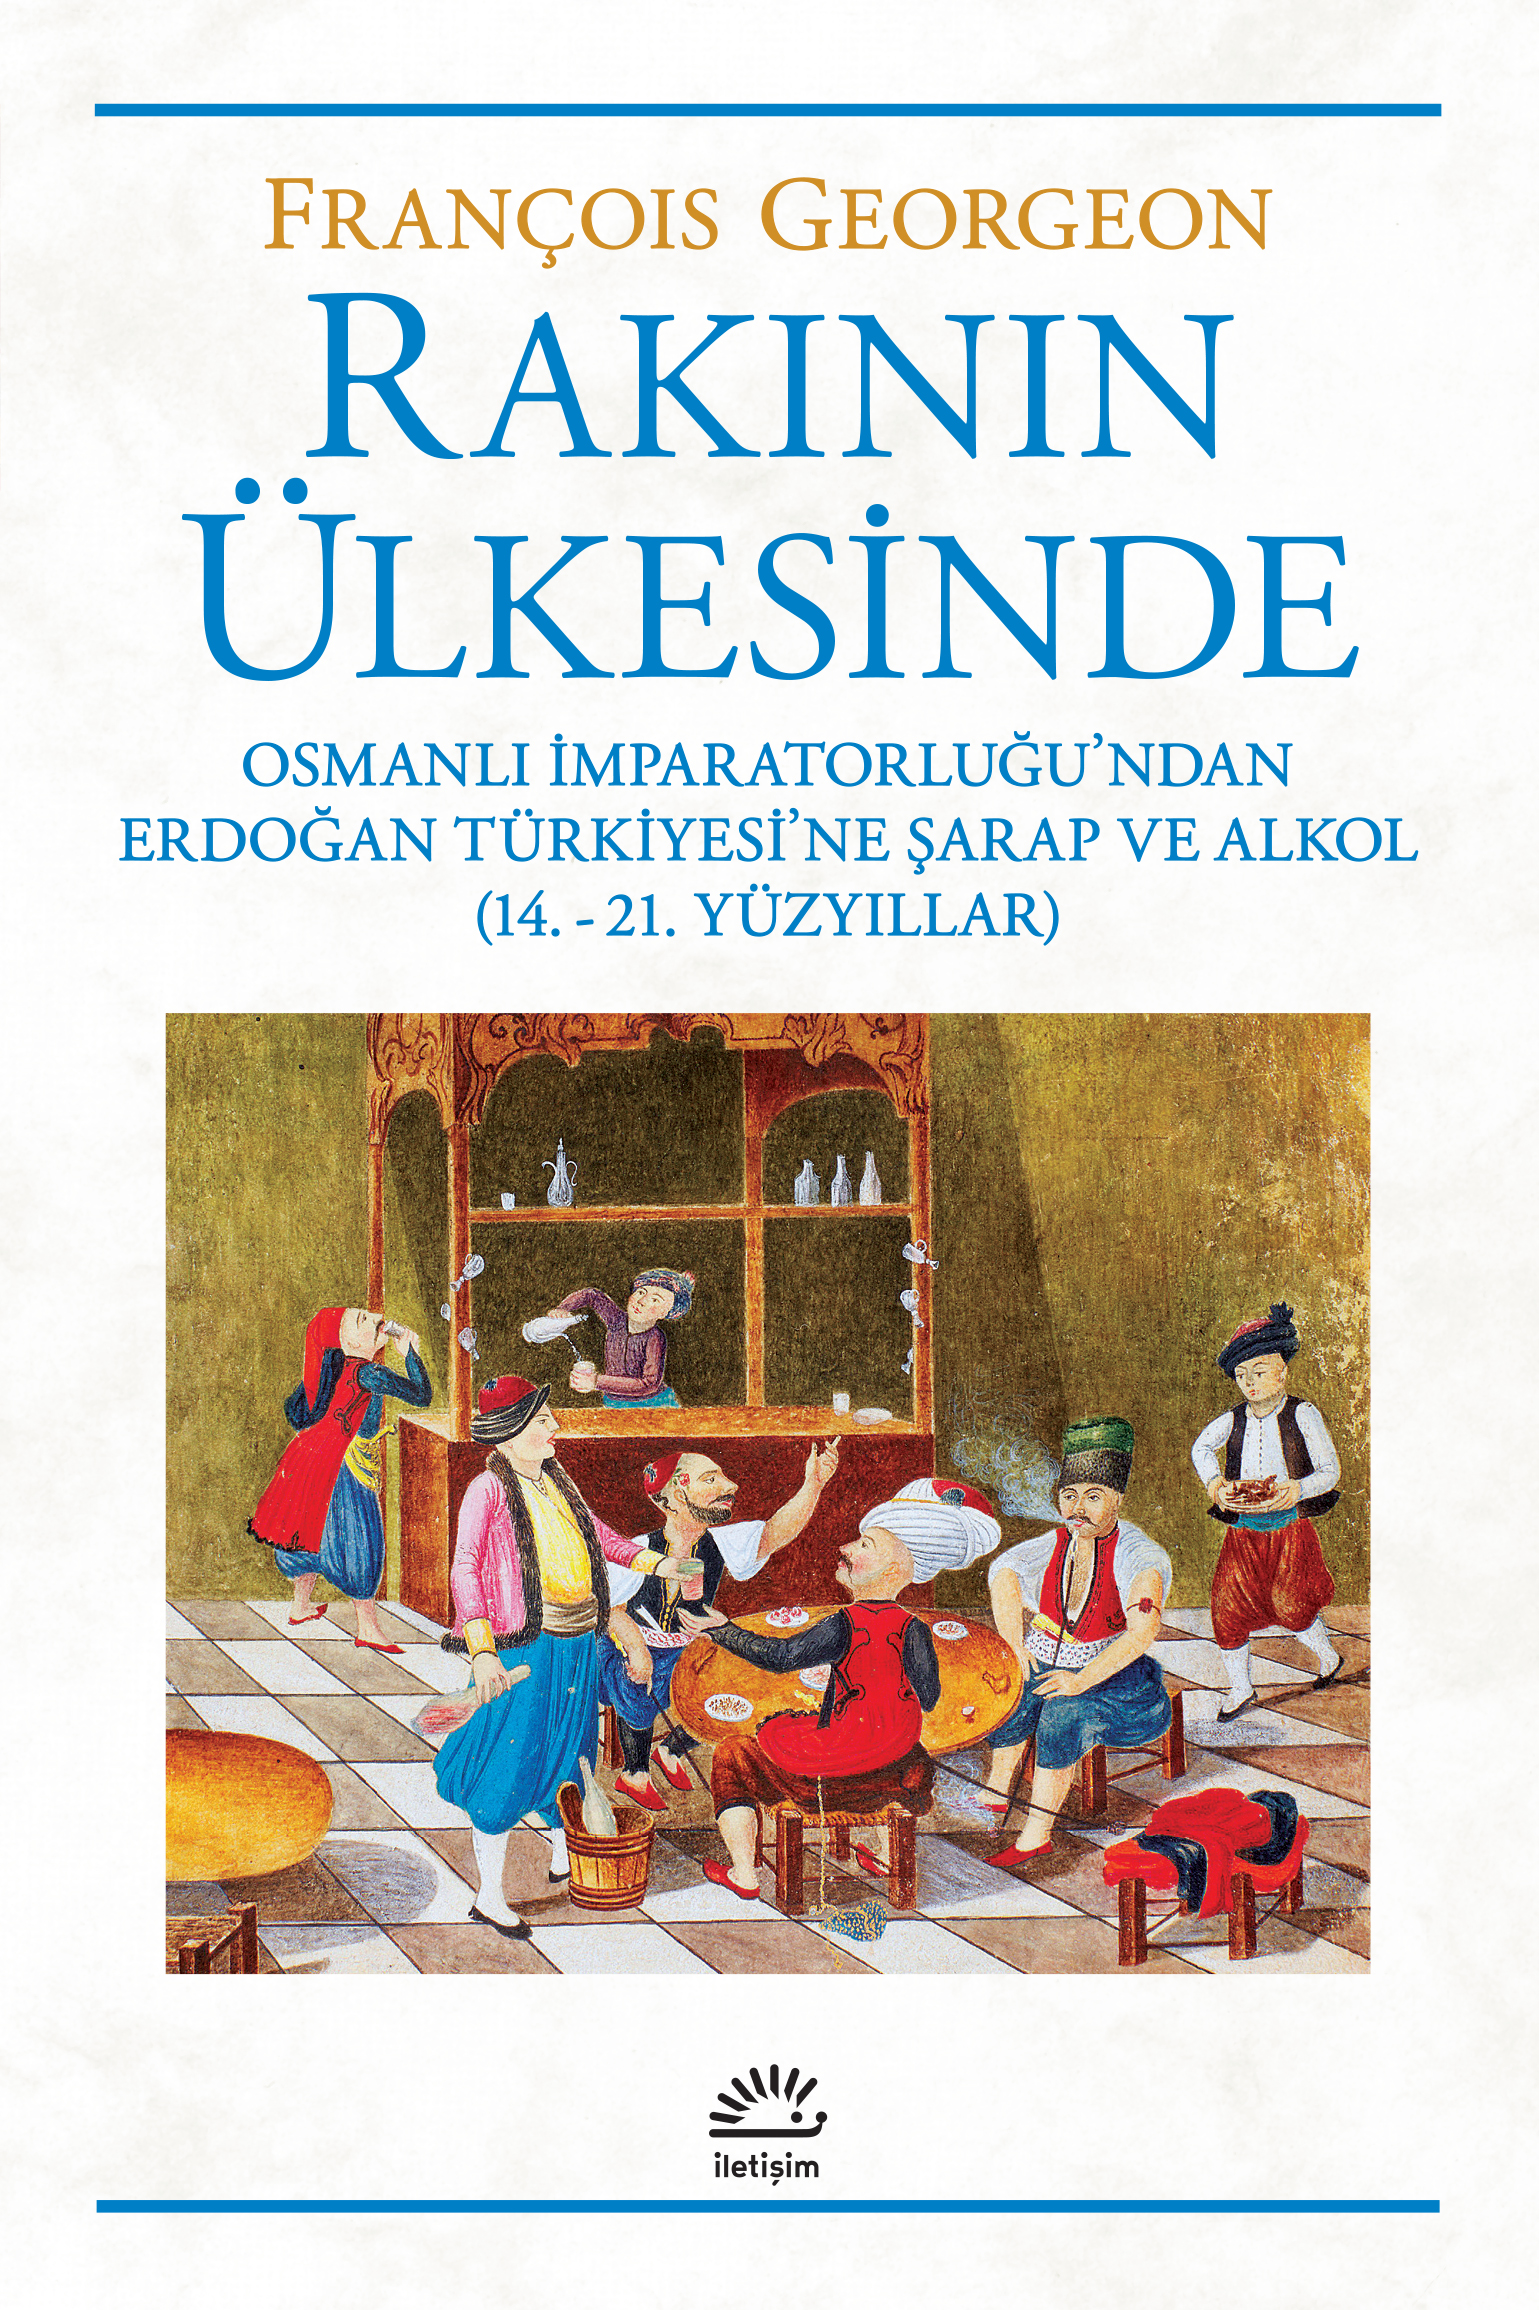 Rakının Ülkesinde Osmanlı İmparatorluğundan Erdoğan Türkiyesi'ne Şarap ve Alkol